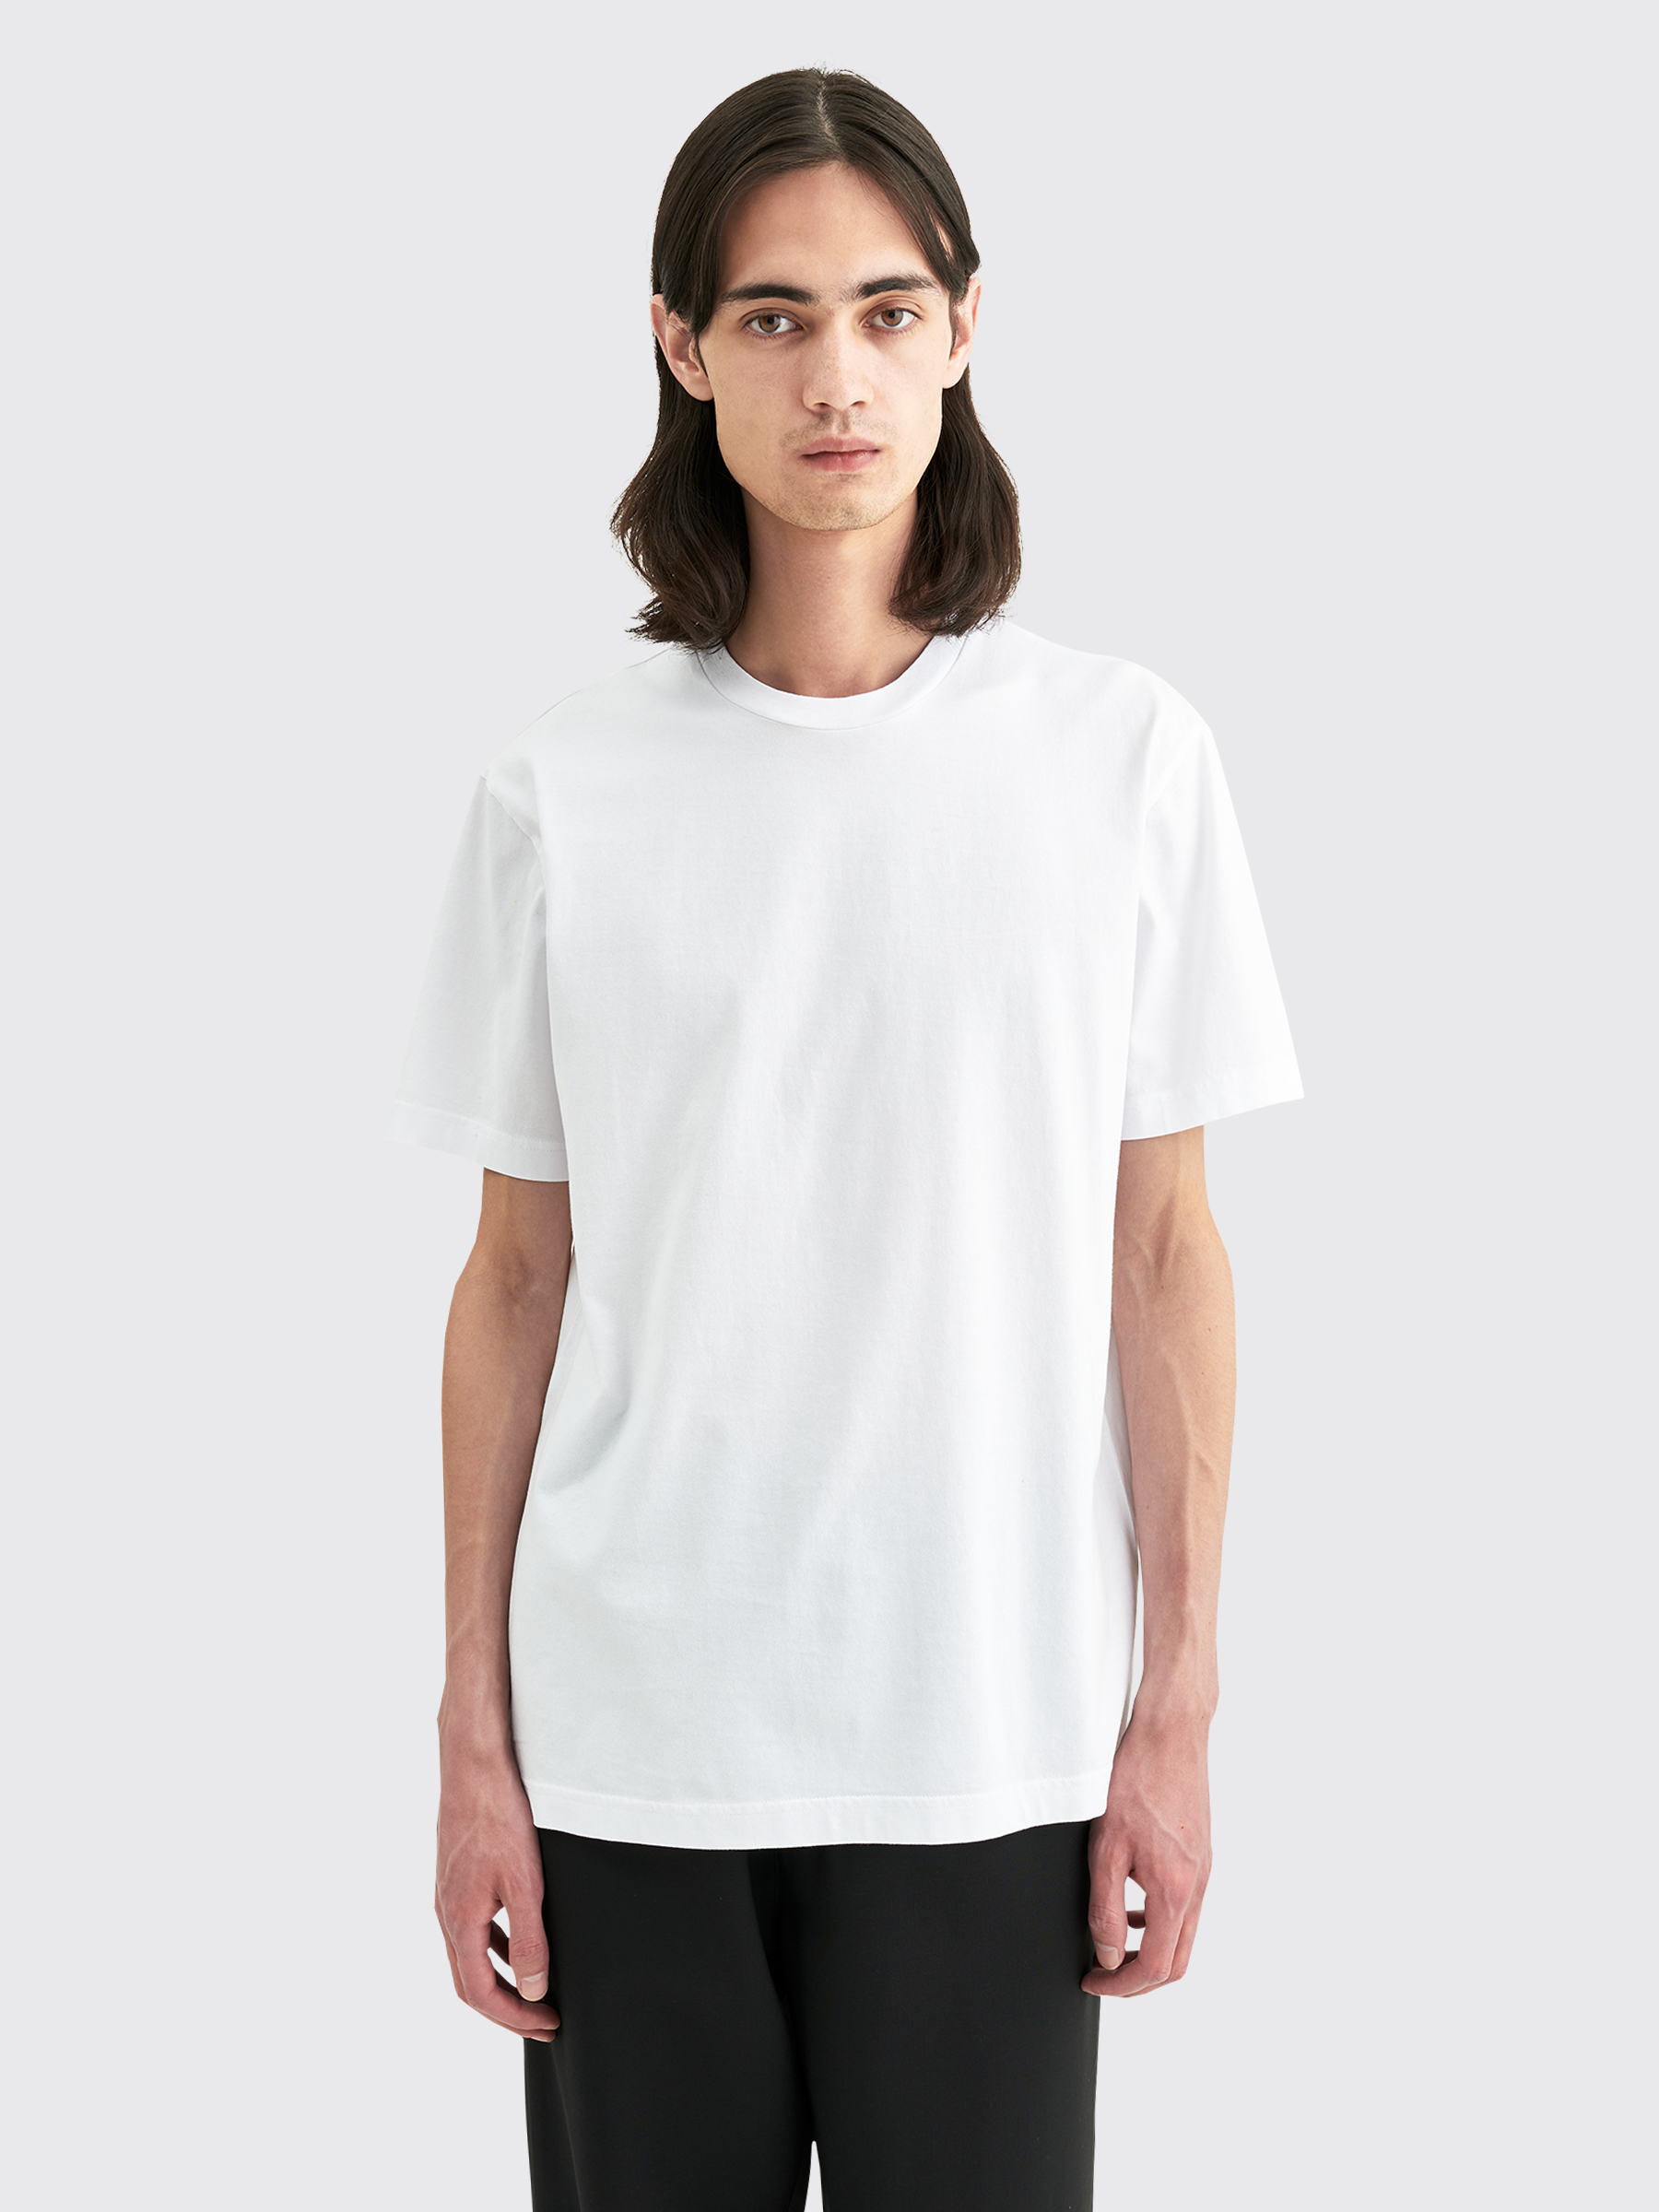 新作モデル Tシャツ Acne studios - Tシャツ/カットソー(半袖/袖なし) - www.indiashopps.com